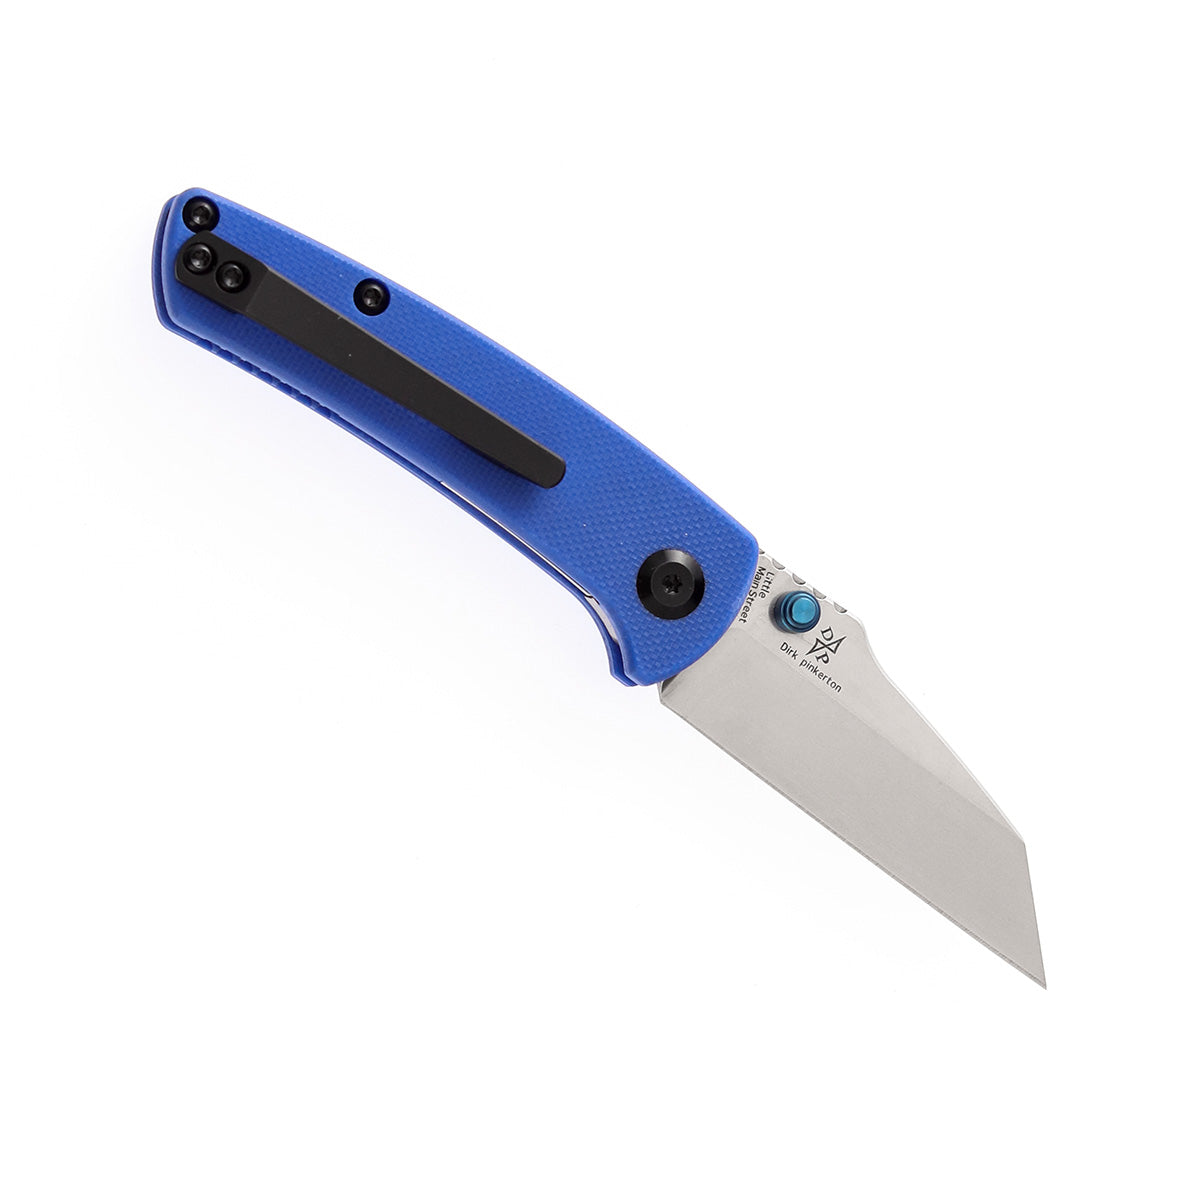 Kansept Little Main Street Flipper Knife T2015A4 154CM Blade Blue G10 Handle